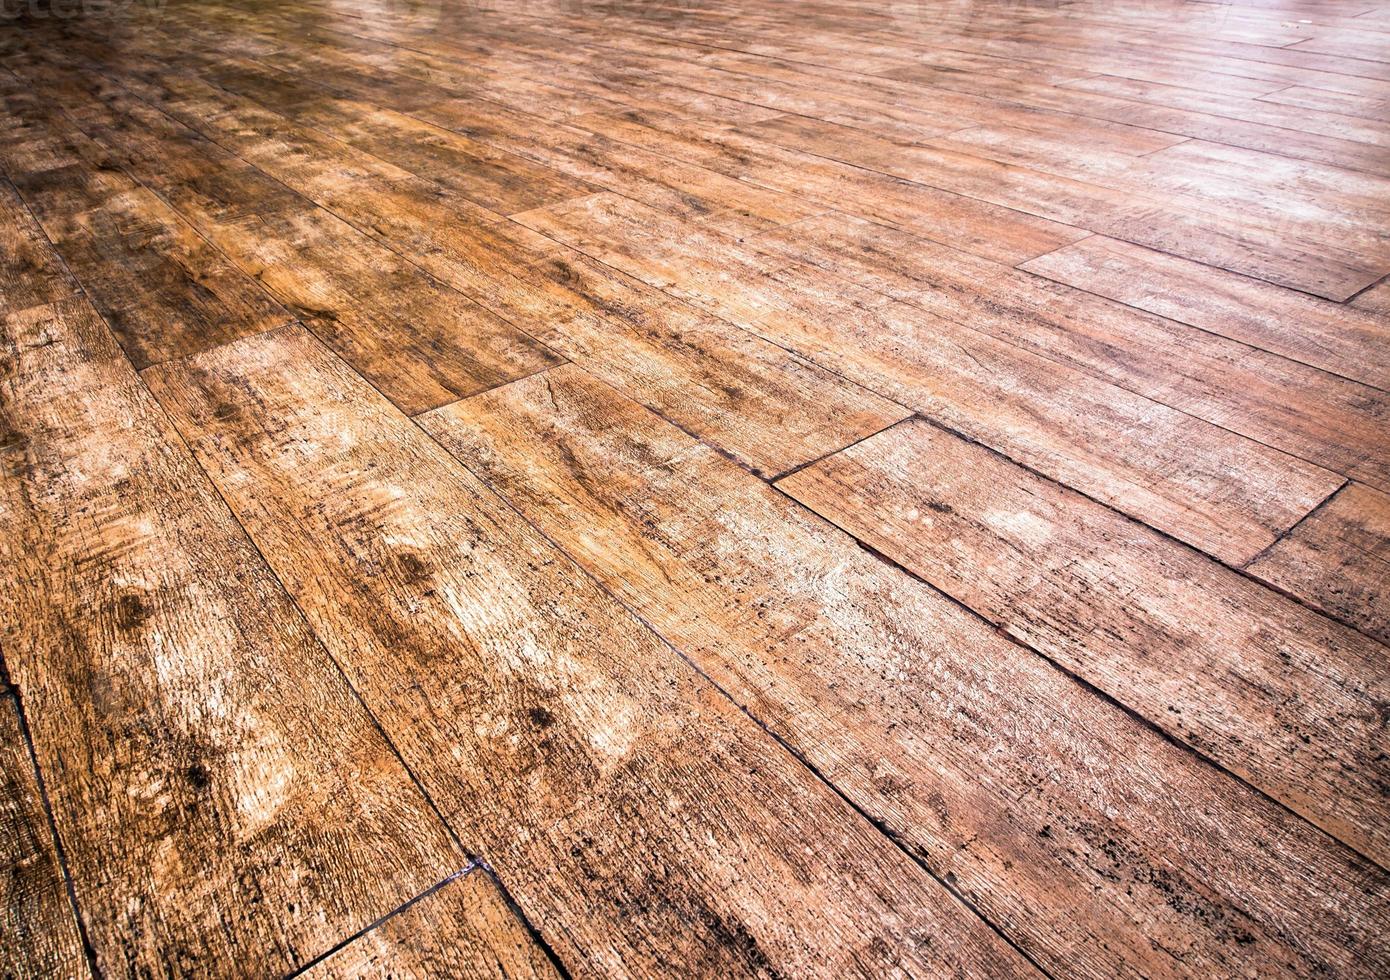 Texture on surface of wooden floor photo